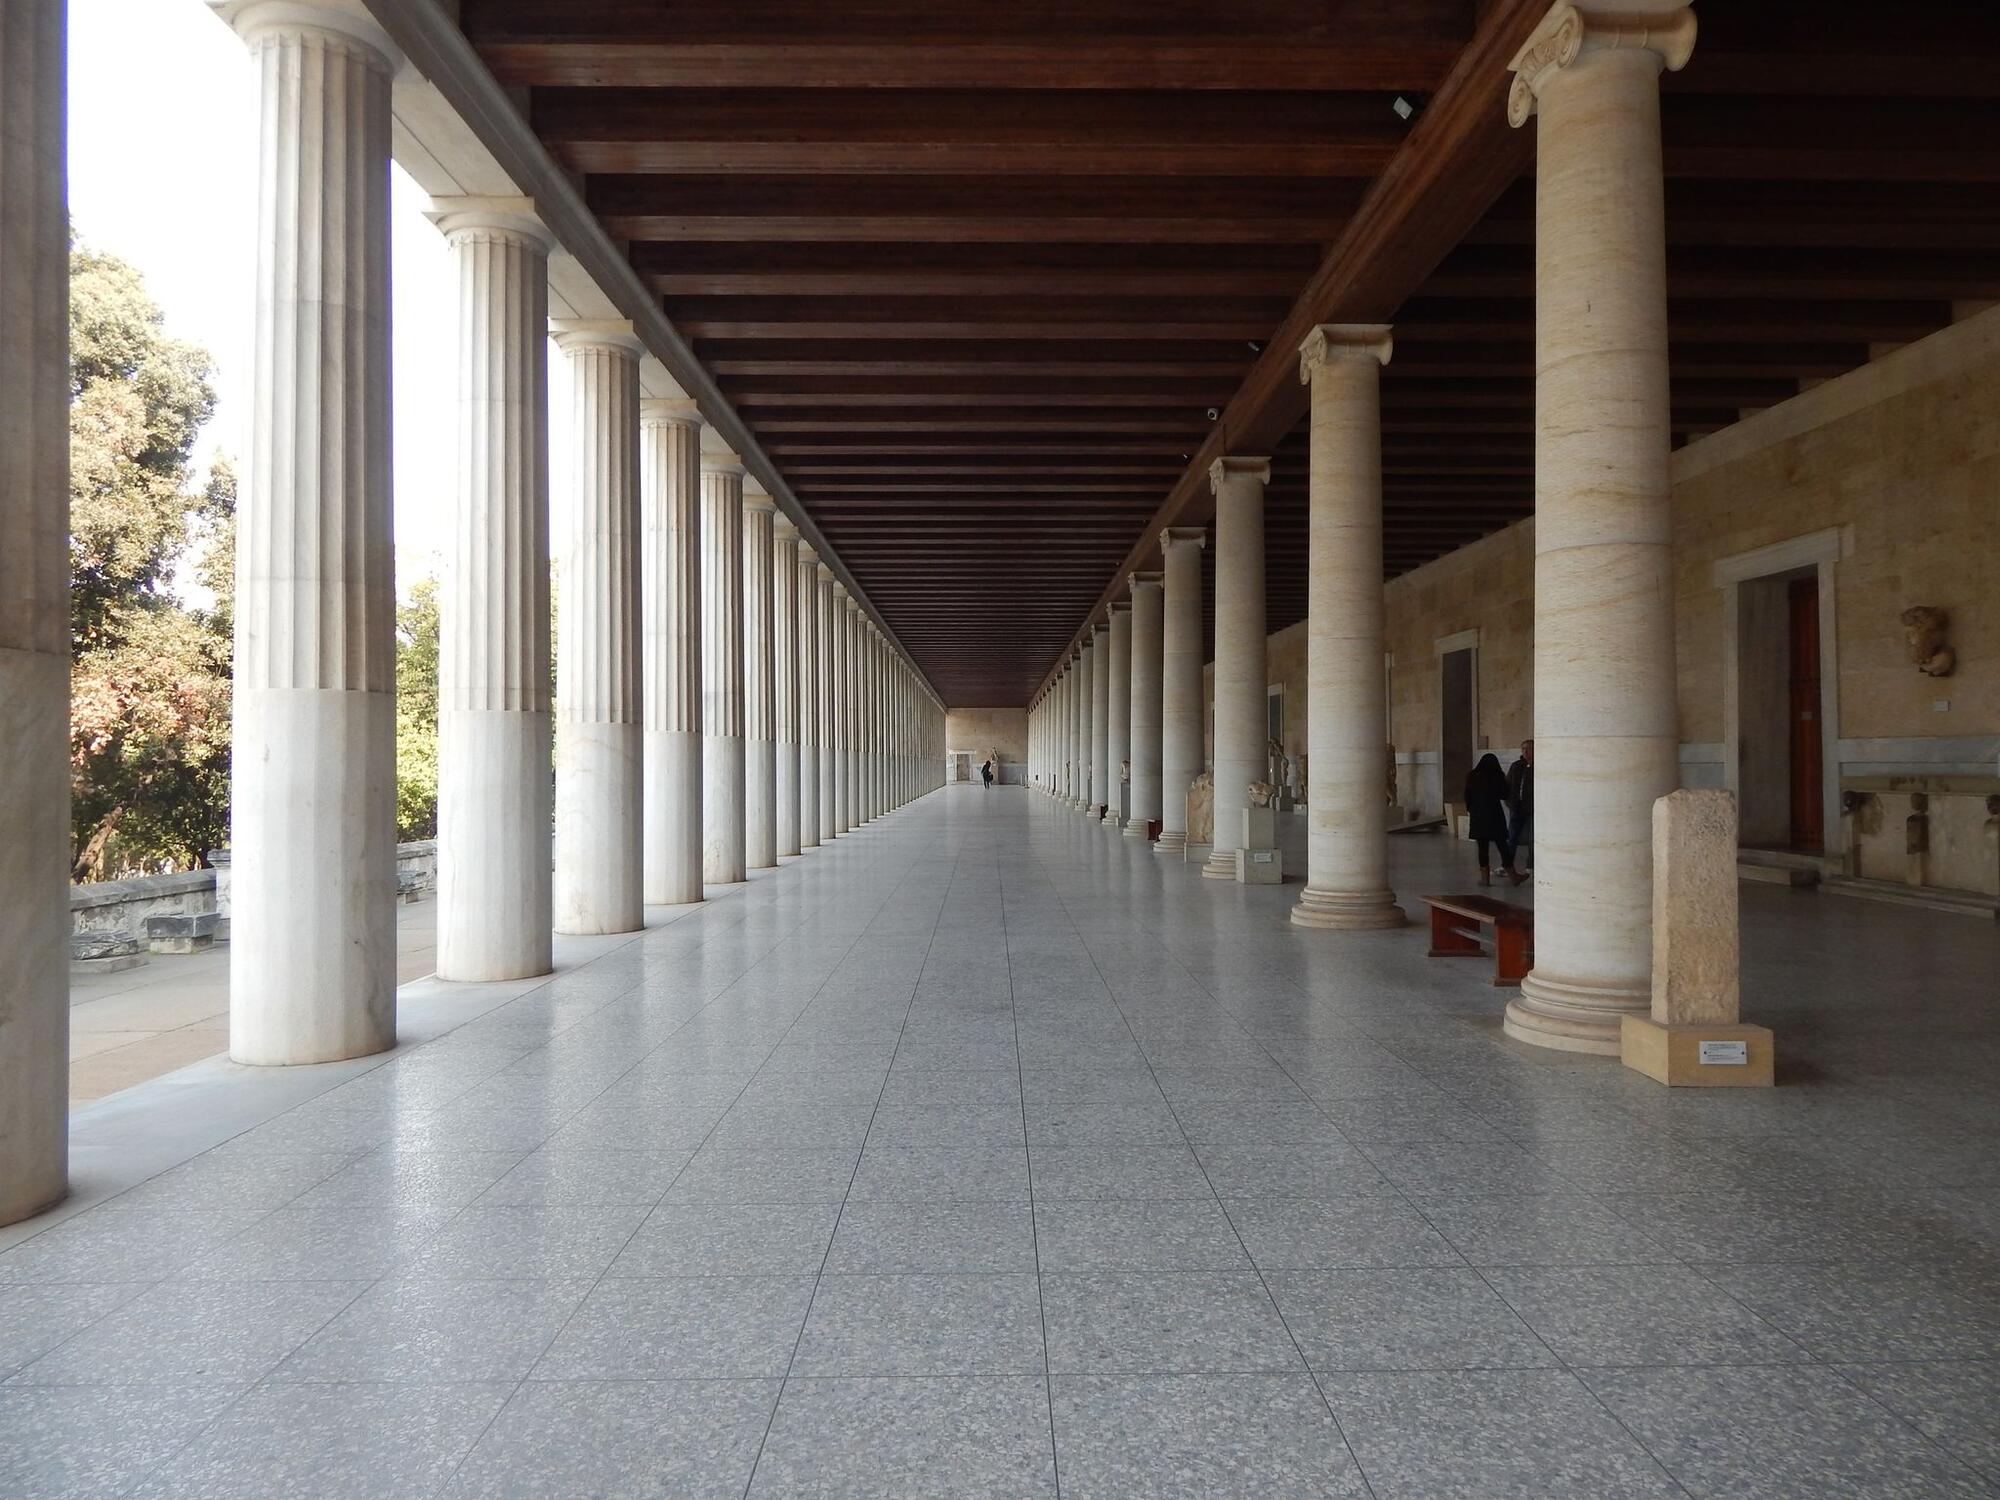 Ένας μεγάλος διάδρομος περιστοιχισμένος από κολώνες αρχαιοελληνικού τύπου στην Στοά του Αττάλου στην Αθήνα.